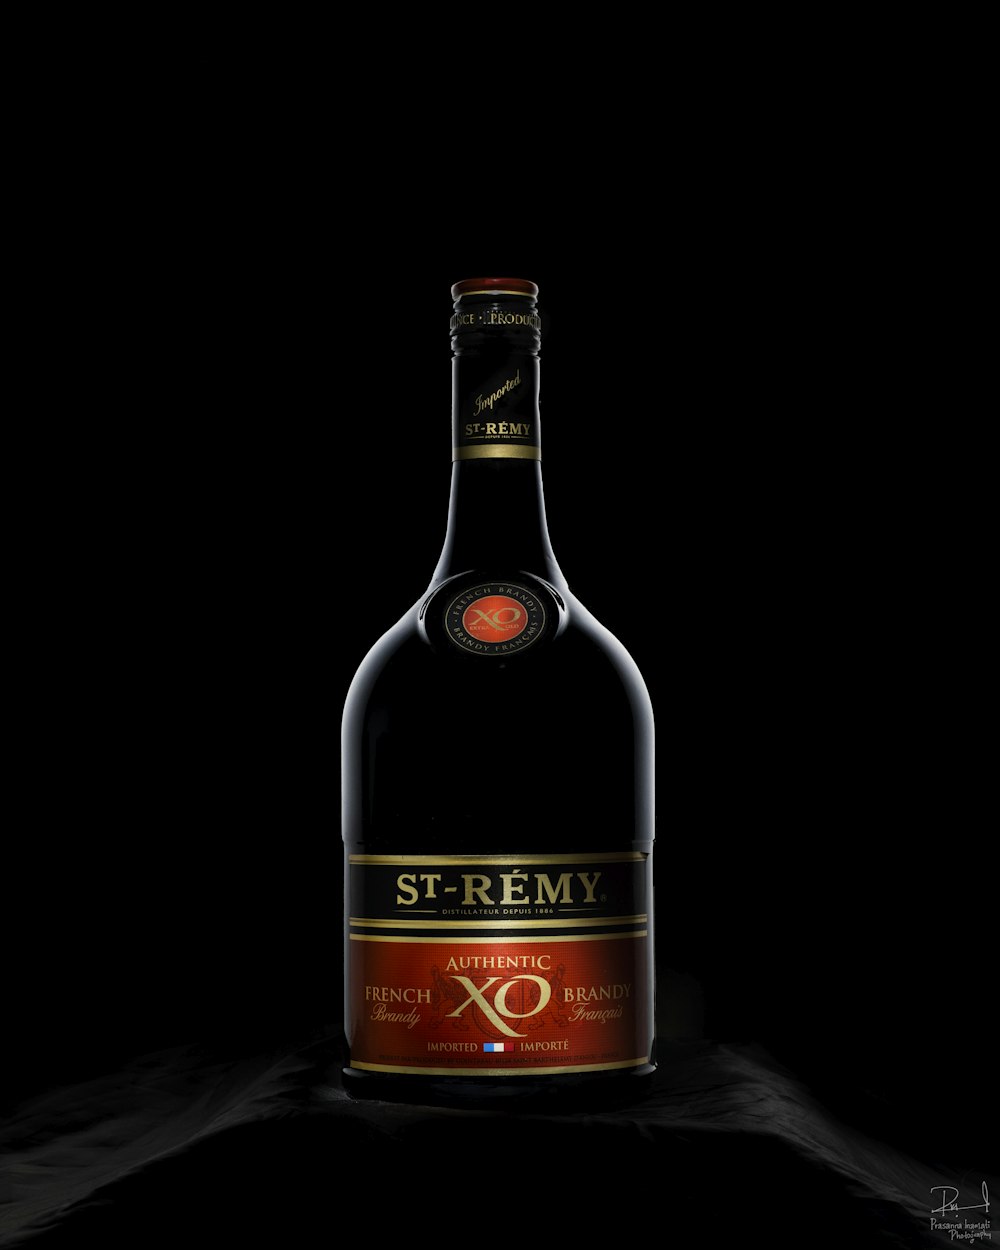 Una botella de St-Remy XO con fondo negro